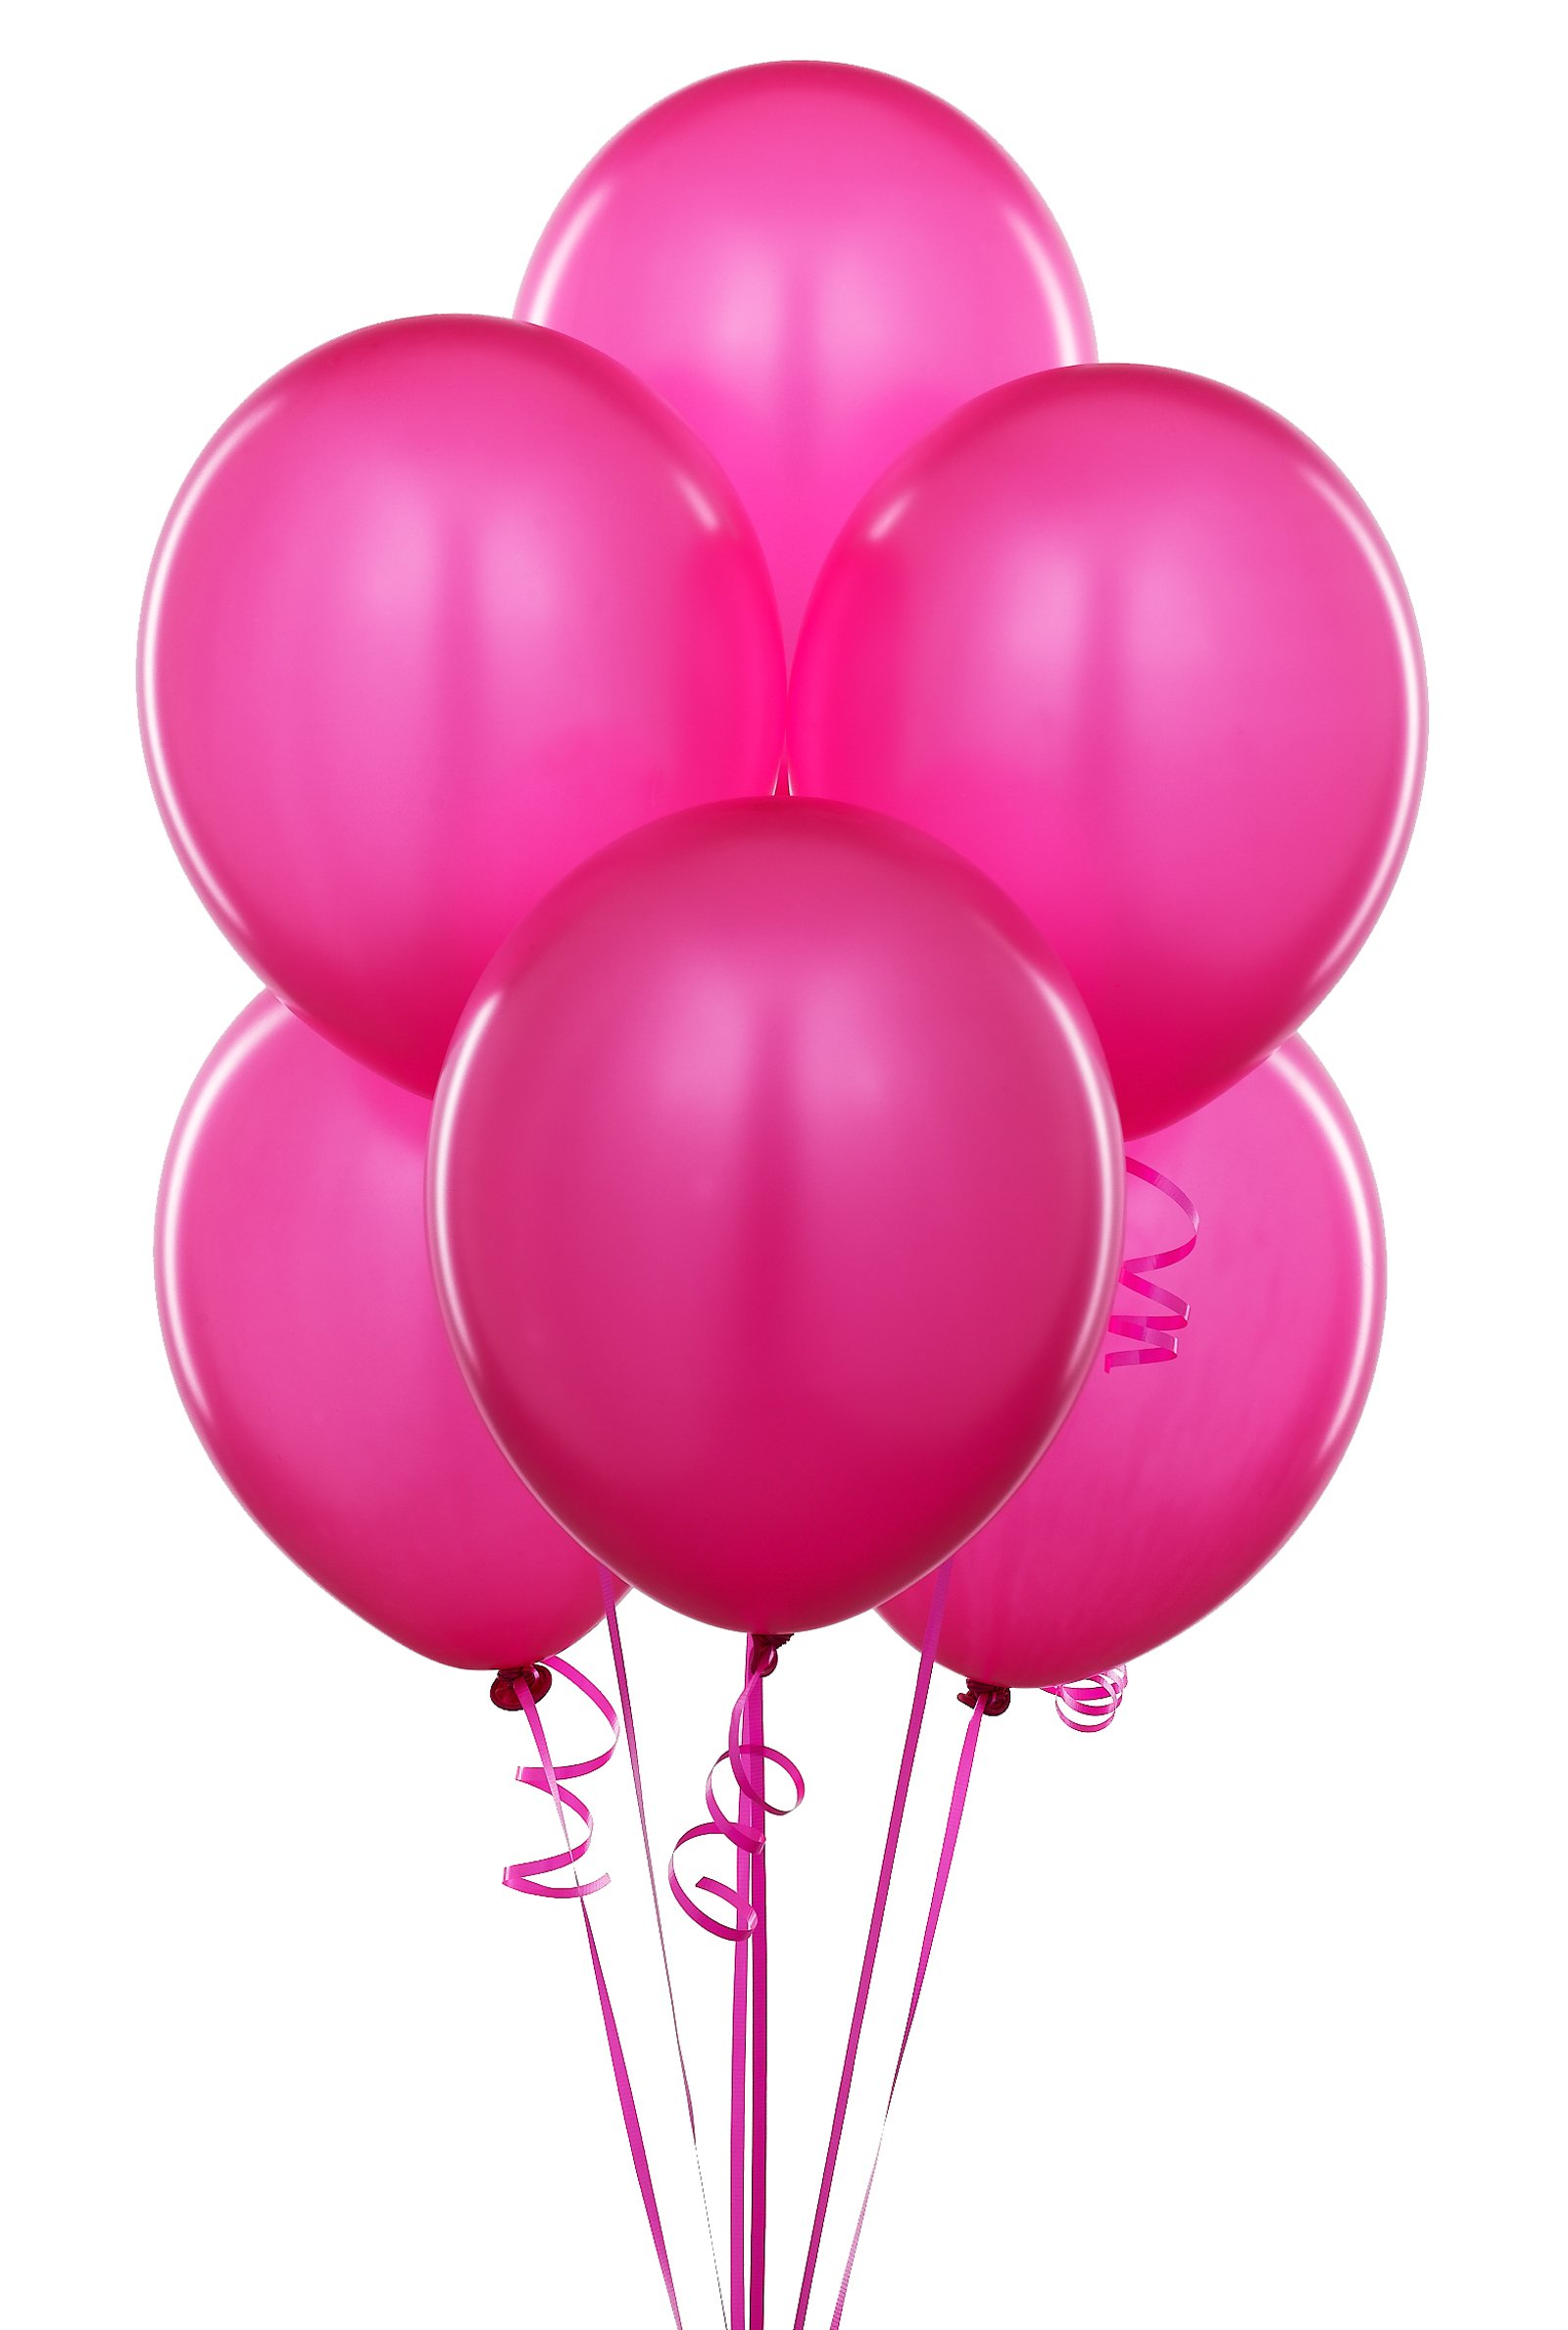 Restaurant Reservation: Birthday Balloon Pictures